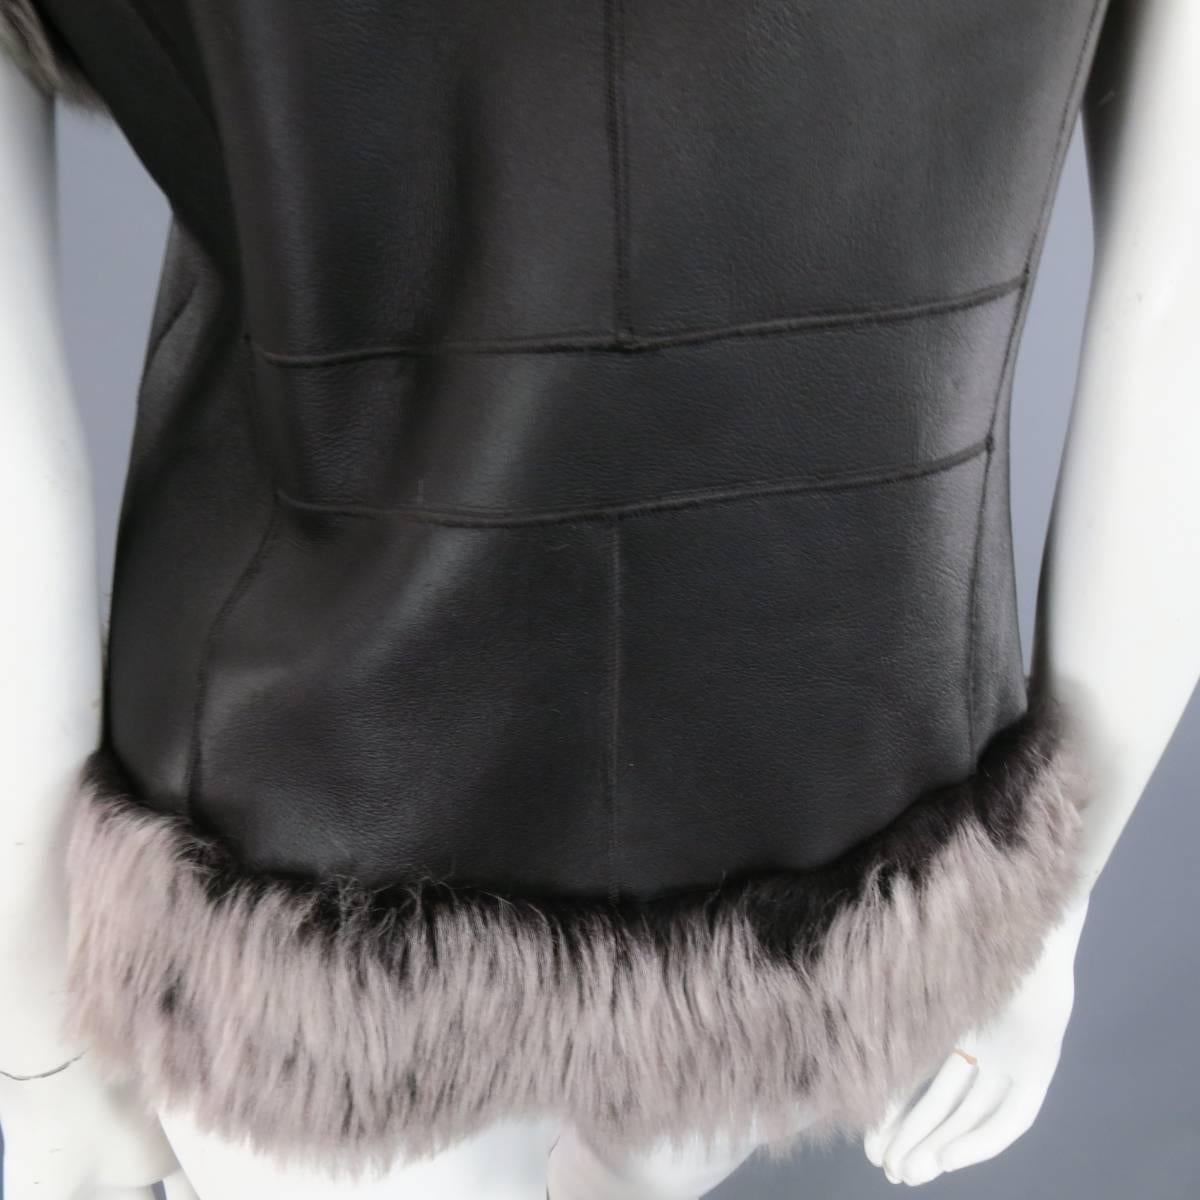 ROSENBERG & LENHART Size 8 Gray & Black Hooded Lamb Fur Shearling Leather Vest 1